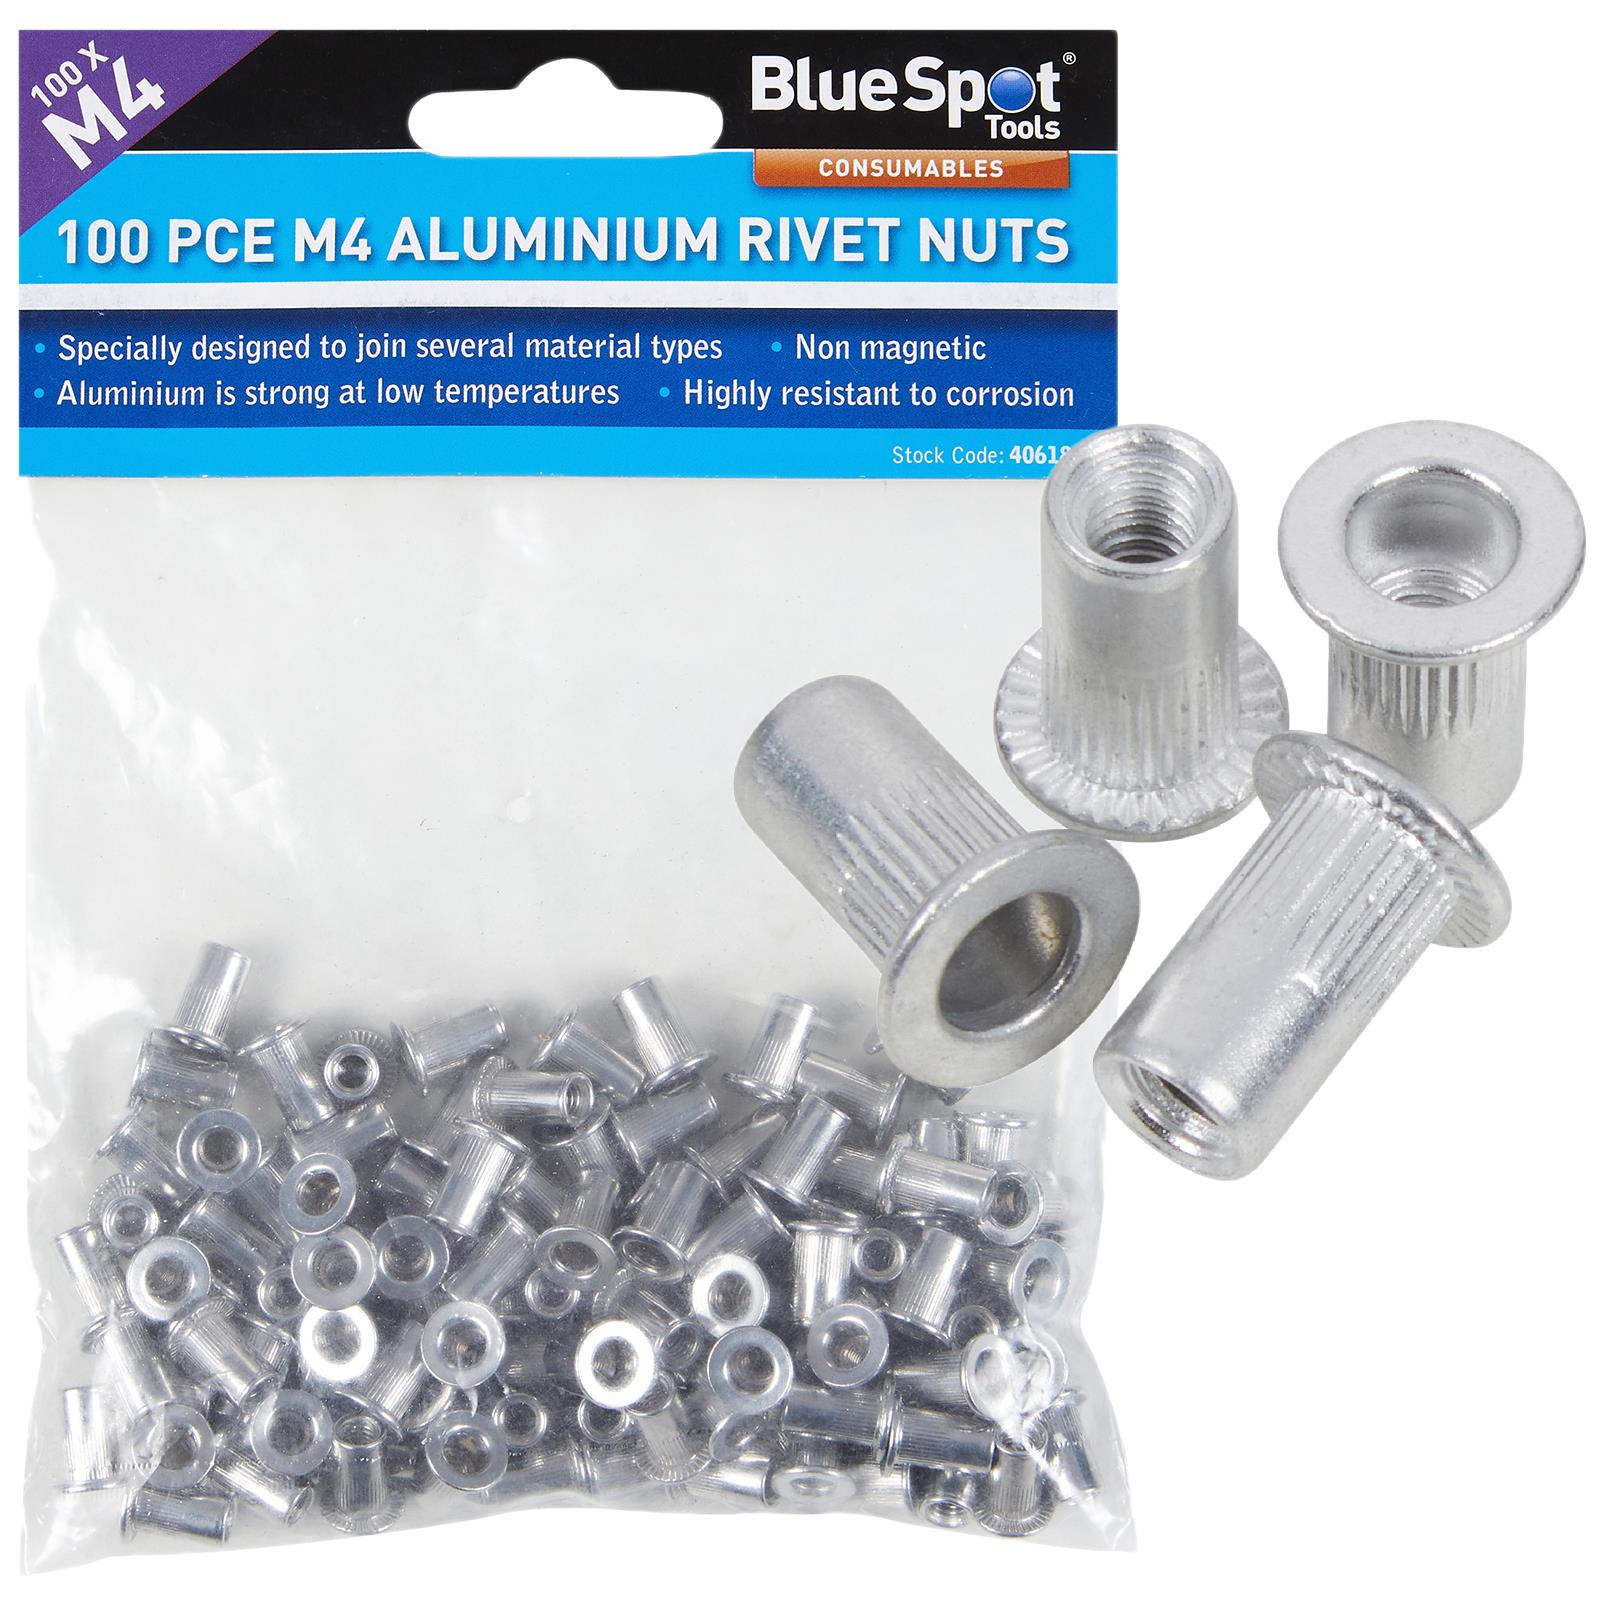 BlueSpot Aluminium Rivet Nuts M4 100 Piece Rivnuts